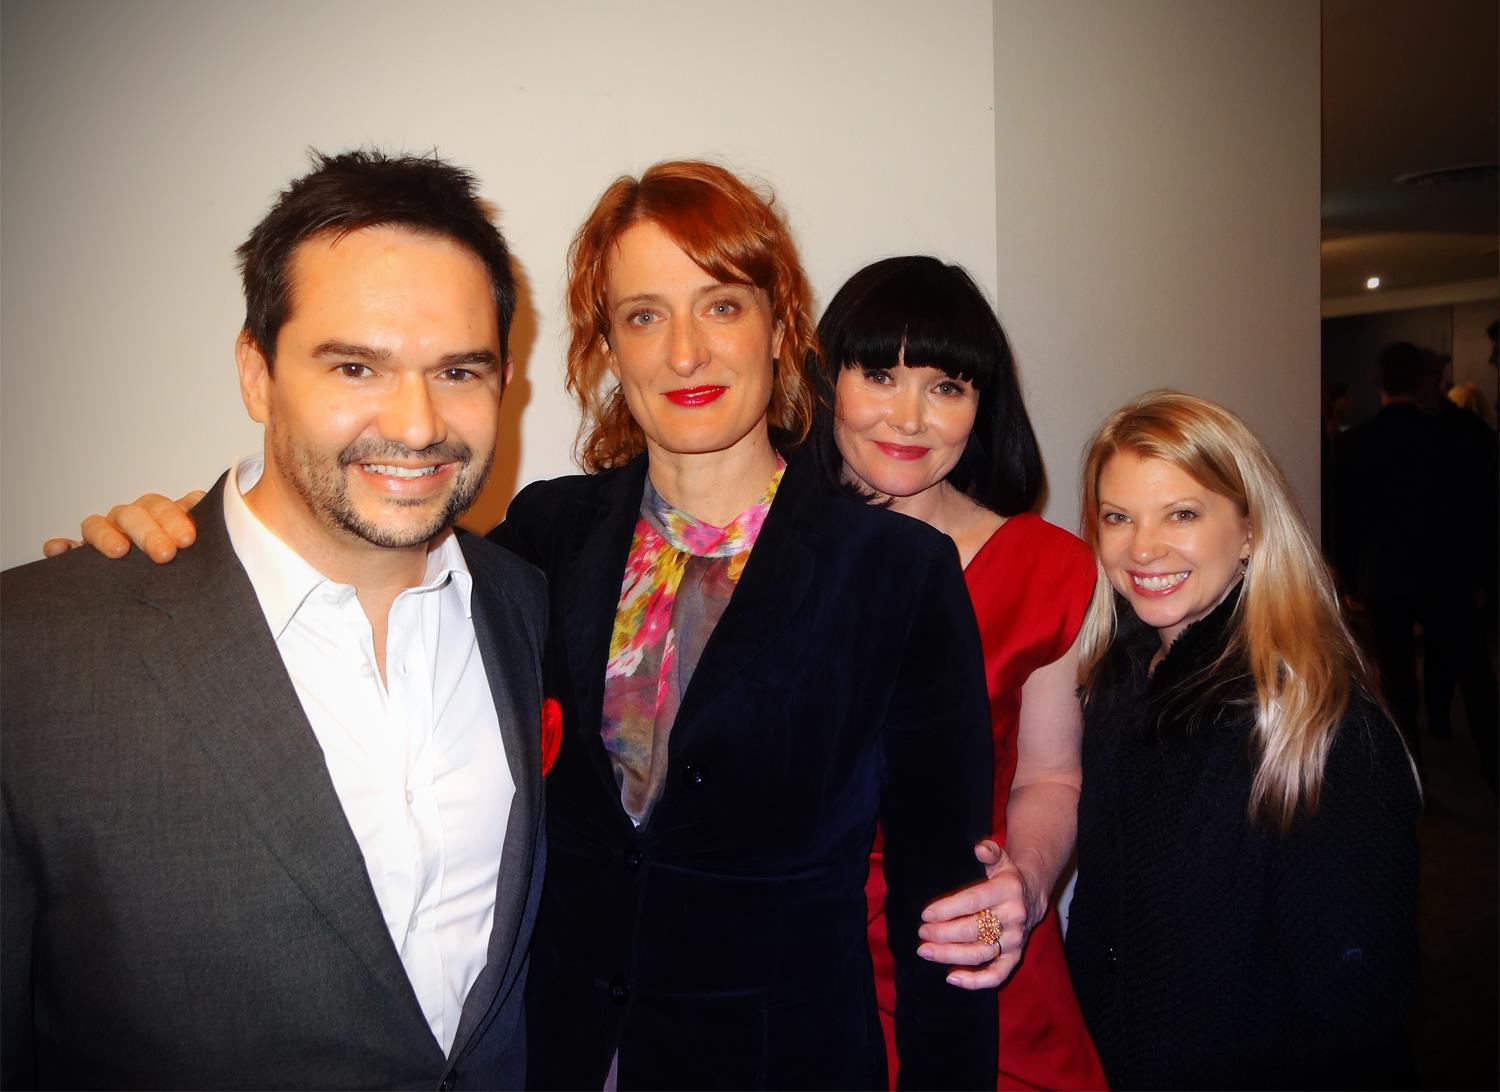 Babadook Sydney Premiere - May 05 2014, Dendy Newtown. Damian Nixey, Jennifer Kent, Essie Davis, Suki Foster.